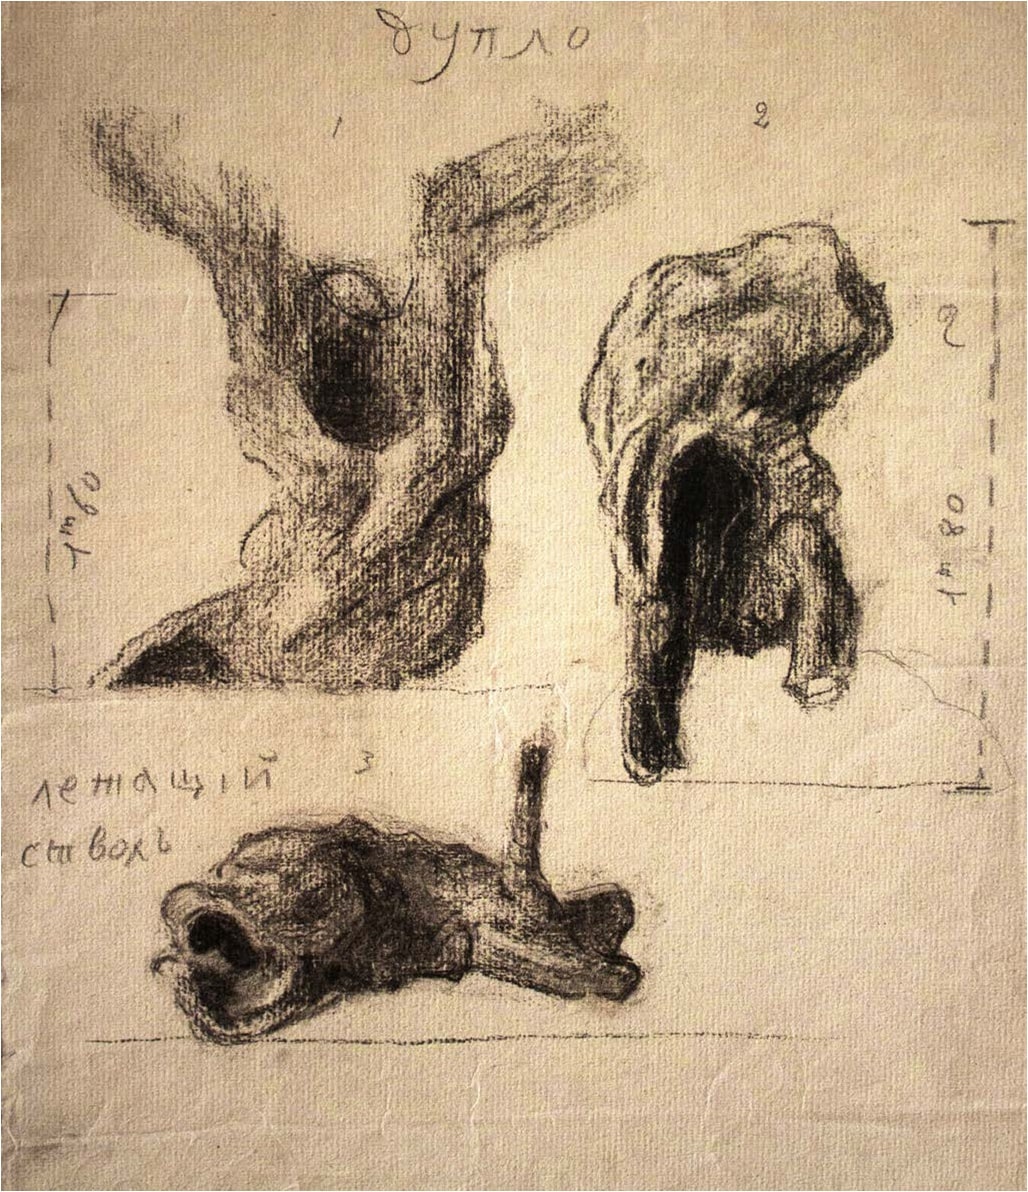 ფანქარი, გუაში, ქაღალდი, 31X24სმ.შალვა ამირანაშვილის სახელობის ხელოვნების სახელმწიფო მუზეუმიშალვა ამირანაშვილის სახელობის ხელოვნების სახელმწიფო მუზეუმი